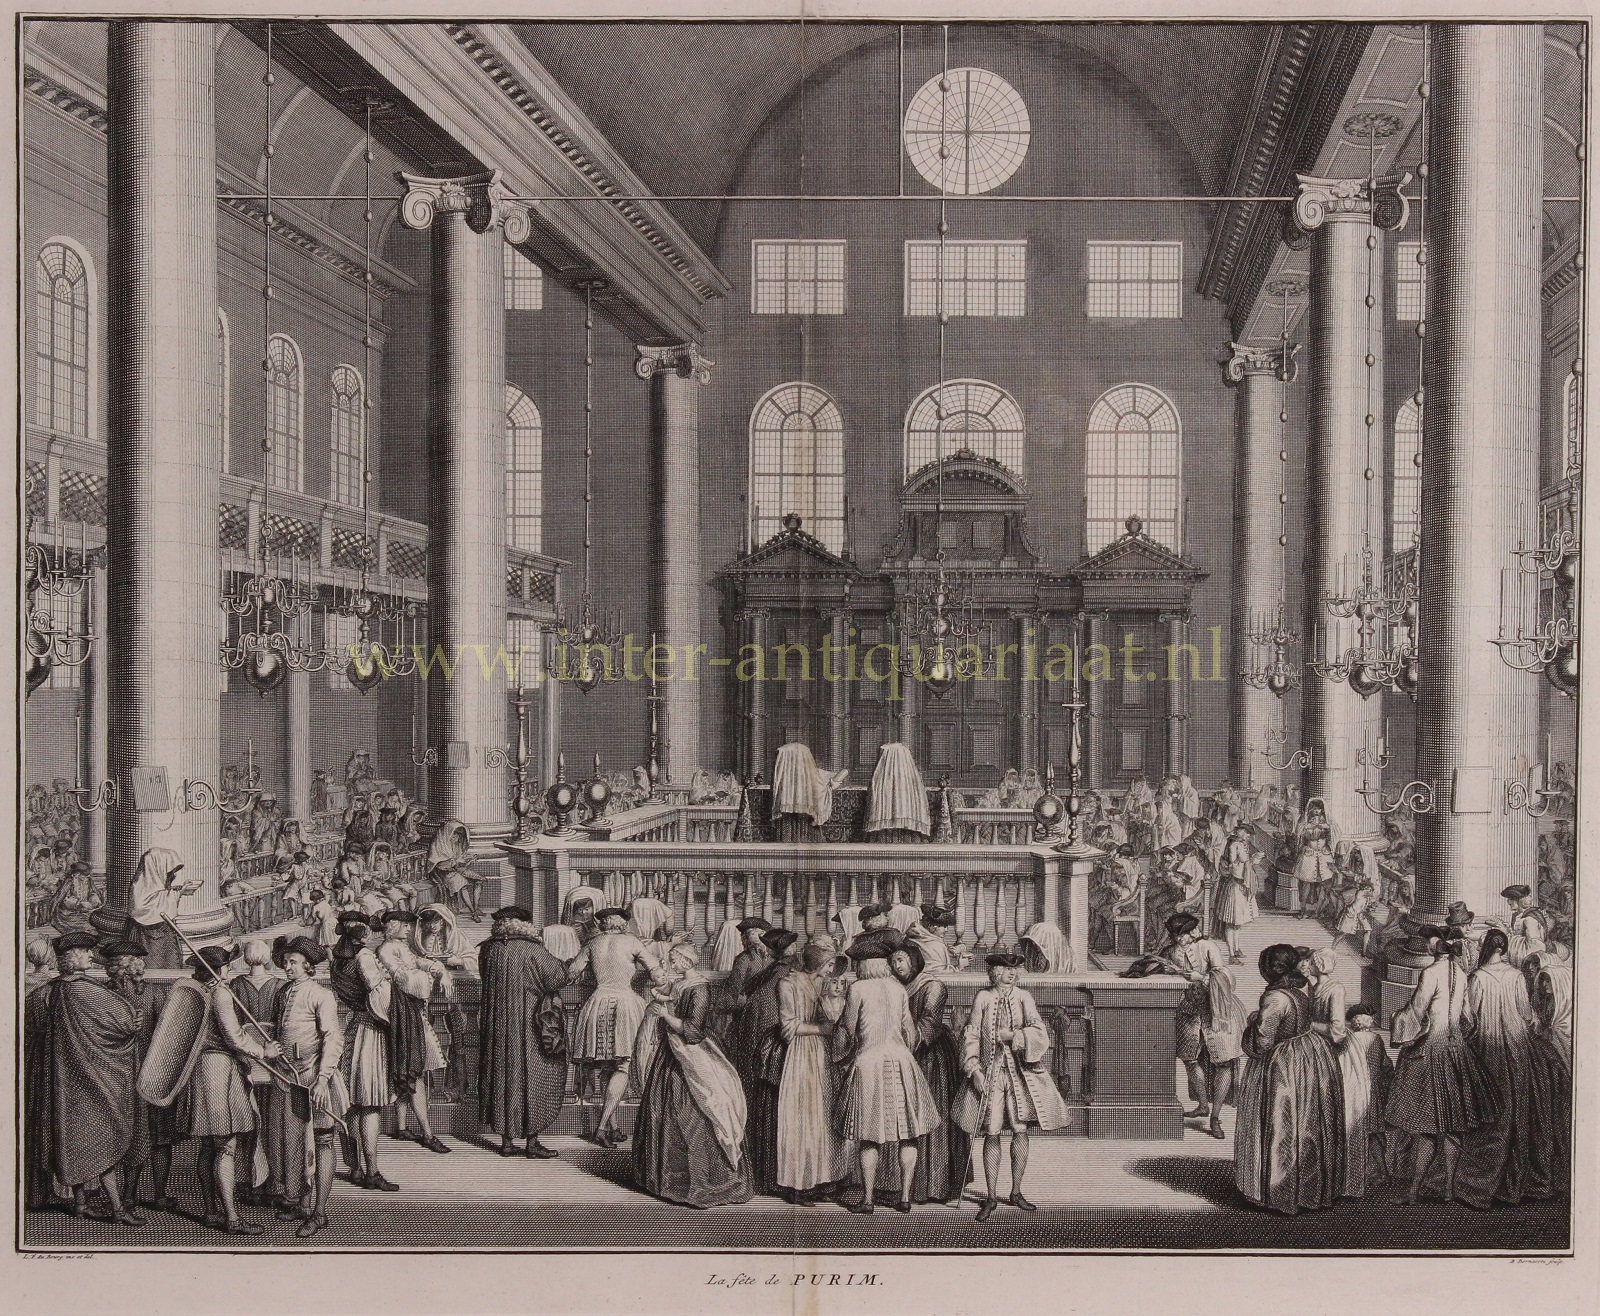 Picard-- Bernard (1683-1733) - Purim in the Portugese synagoge in Amsterdam - Bernard Picart, 1738